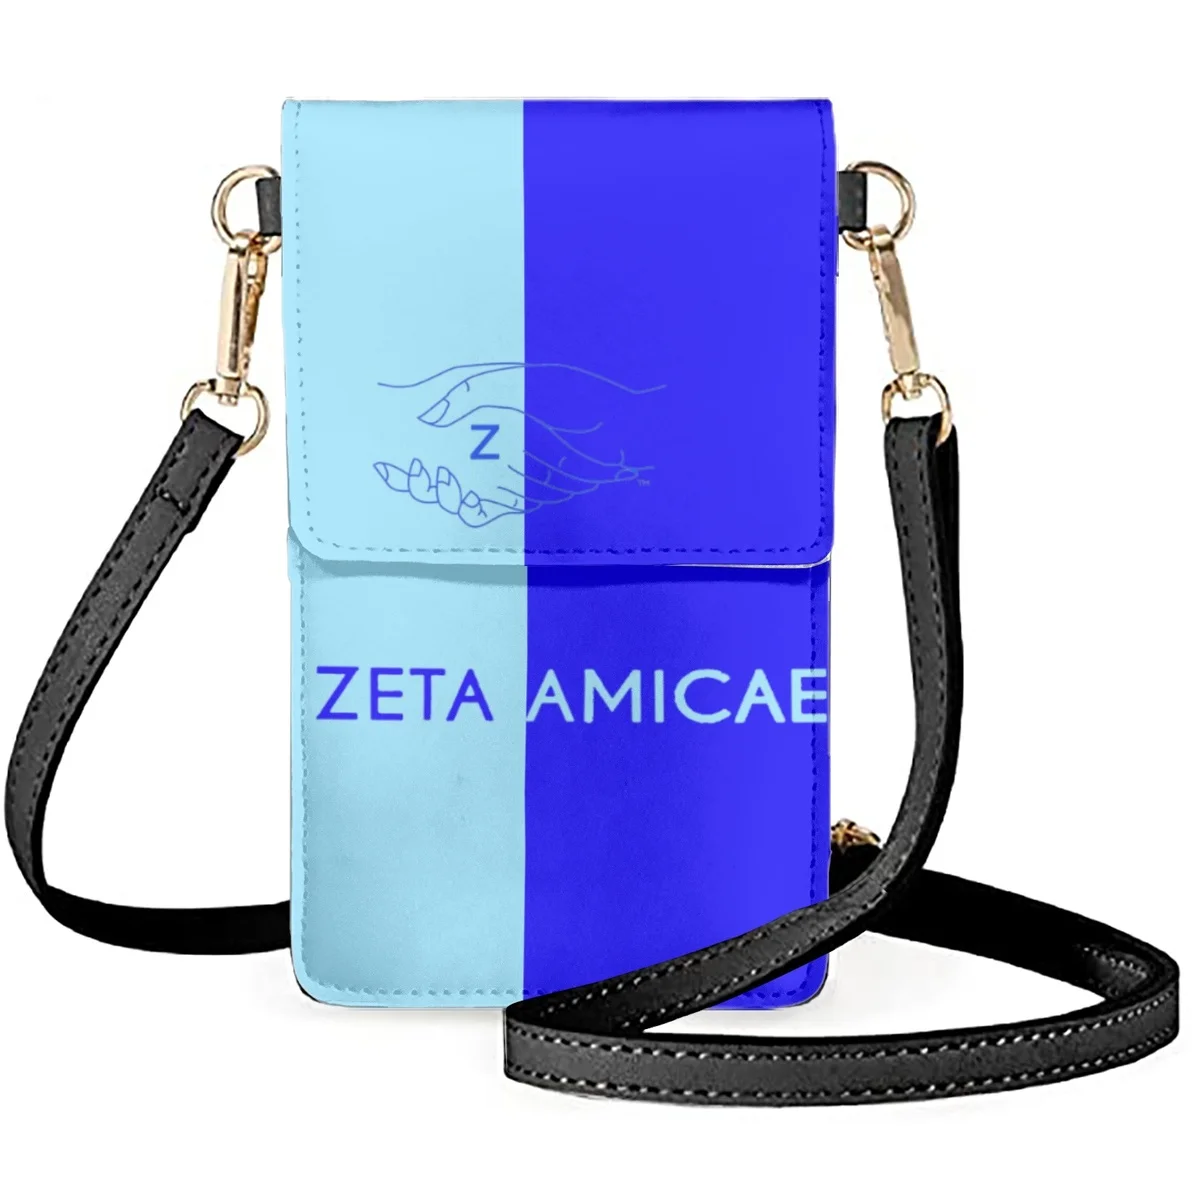 

Сумка для телефона FORUDESIGNS Zeta Amicae контрастных цветов, кожаные флип-сумки через плечо, женские нишевые модные мессенджеры, классическая сумка